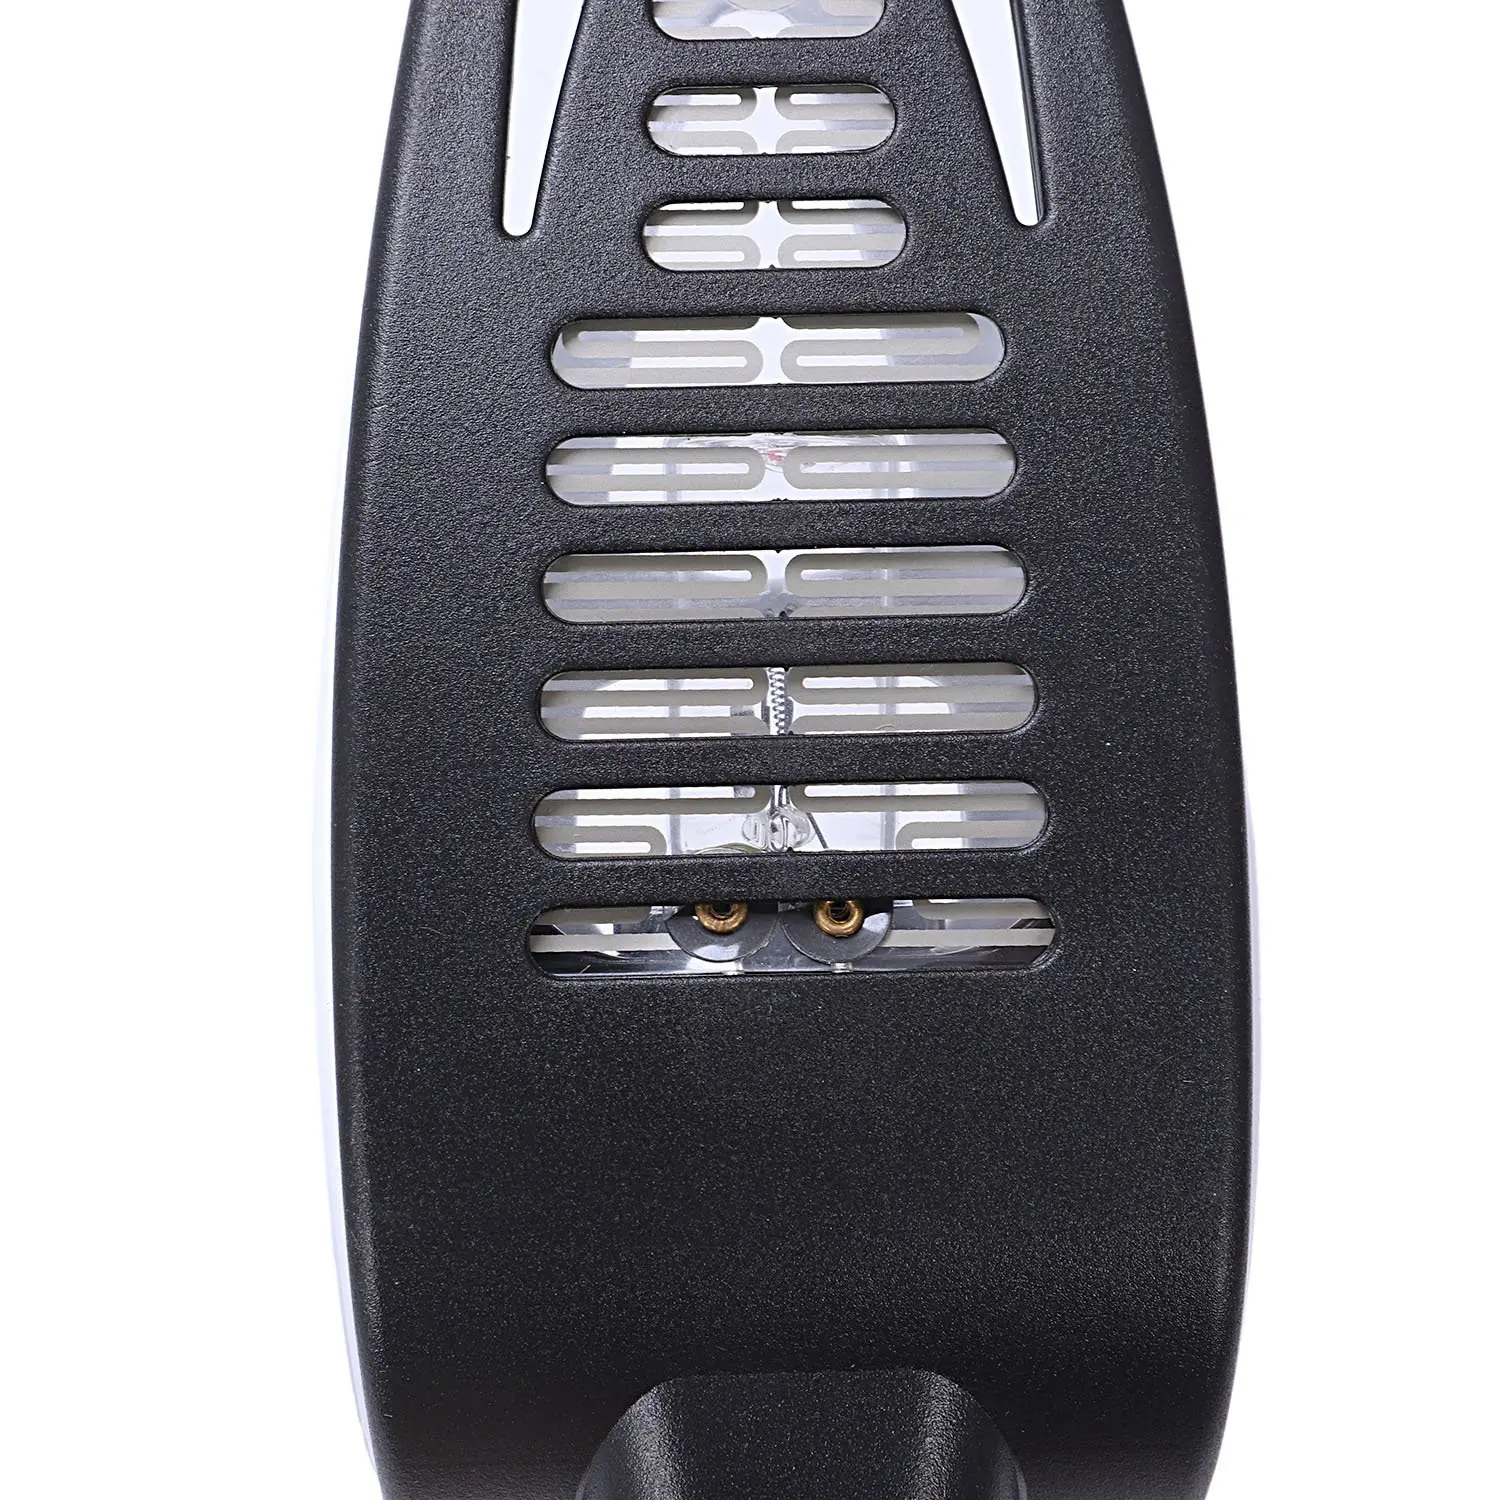 Домашняя электрическая сушилка для обуви дезодорант УФ обувь стерилизация устройство качество Выпекание обуви сушилка с озоном светодиодный экран Таймер сенсорный-Sw